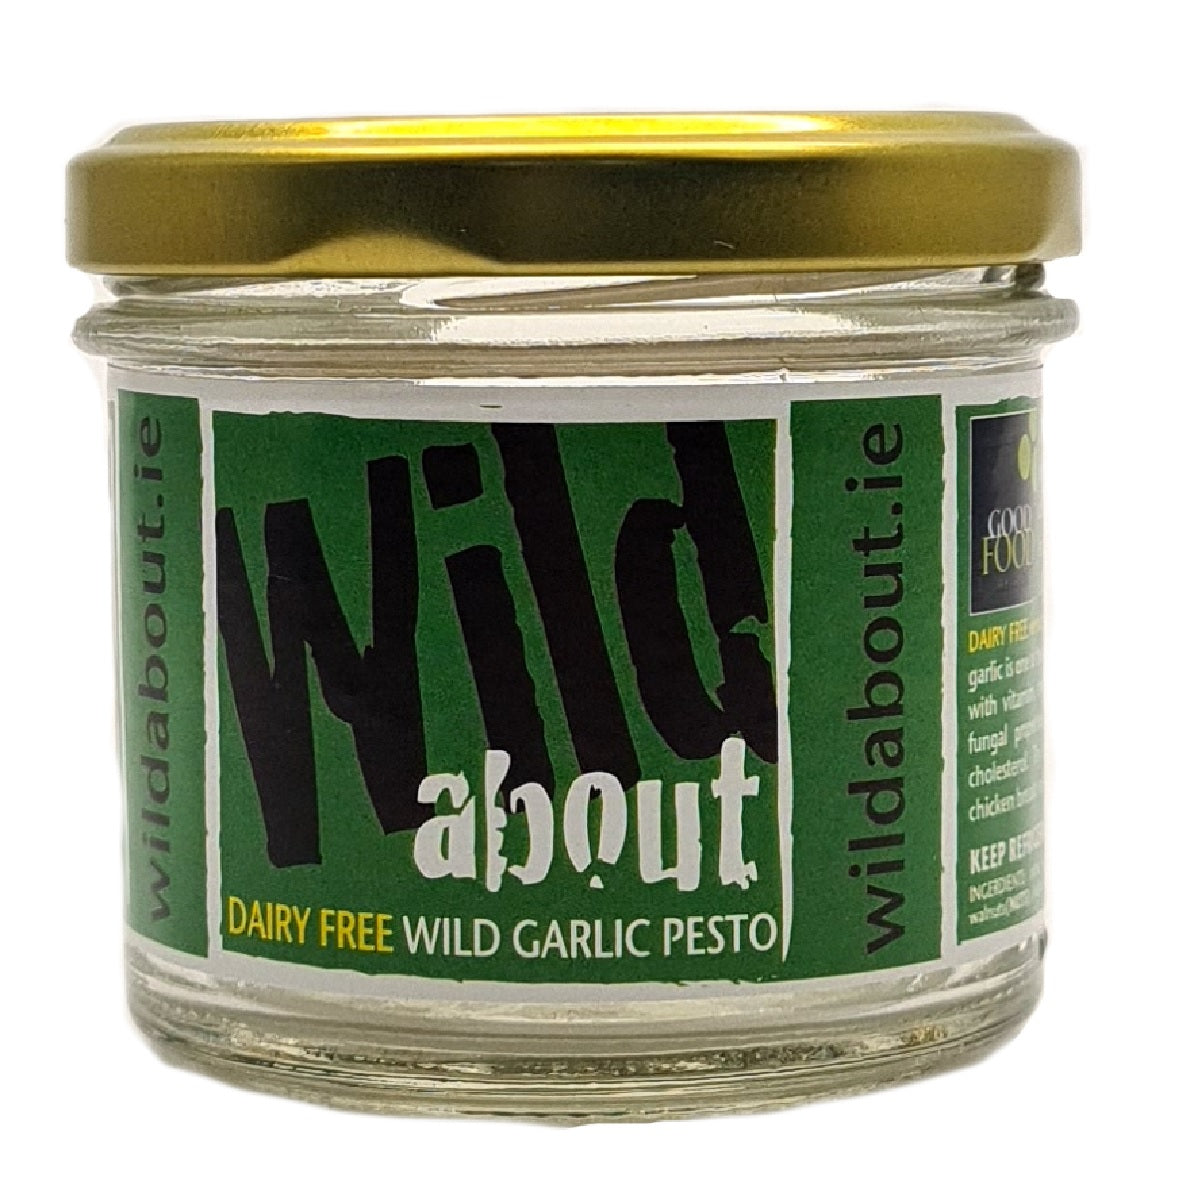 Wild About Dairy Free Wild Garlic Pesto 110g